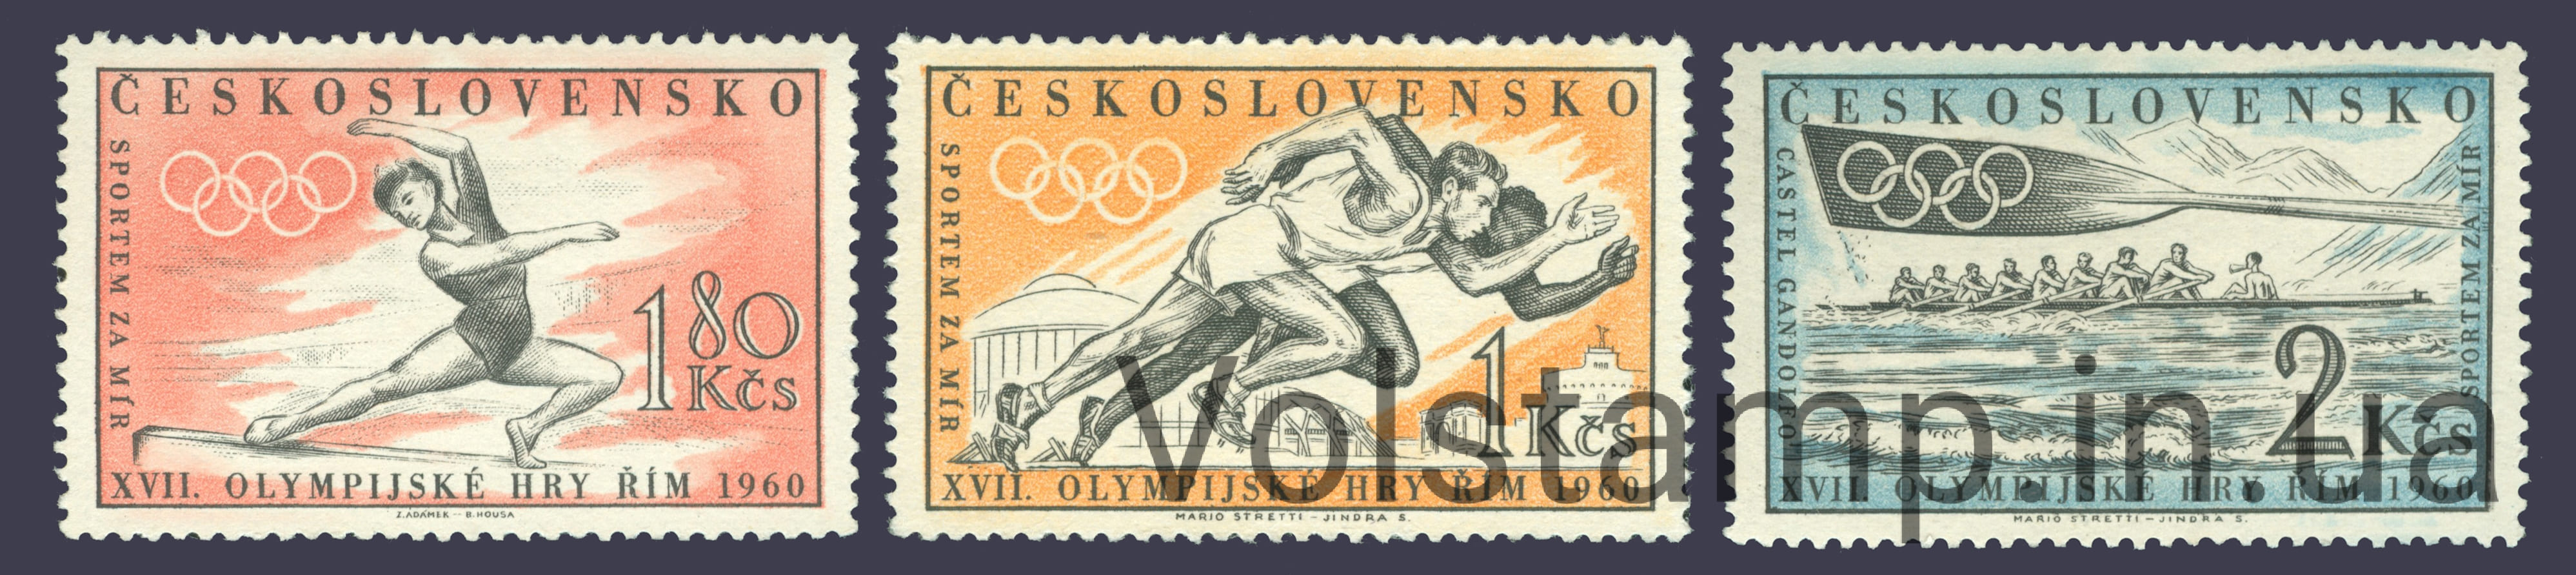 1960 Чехословакия Серия марок (Летние Олимпийские игры, Рим) MNH №1206-1208